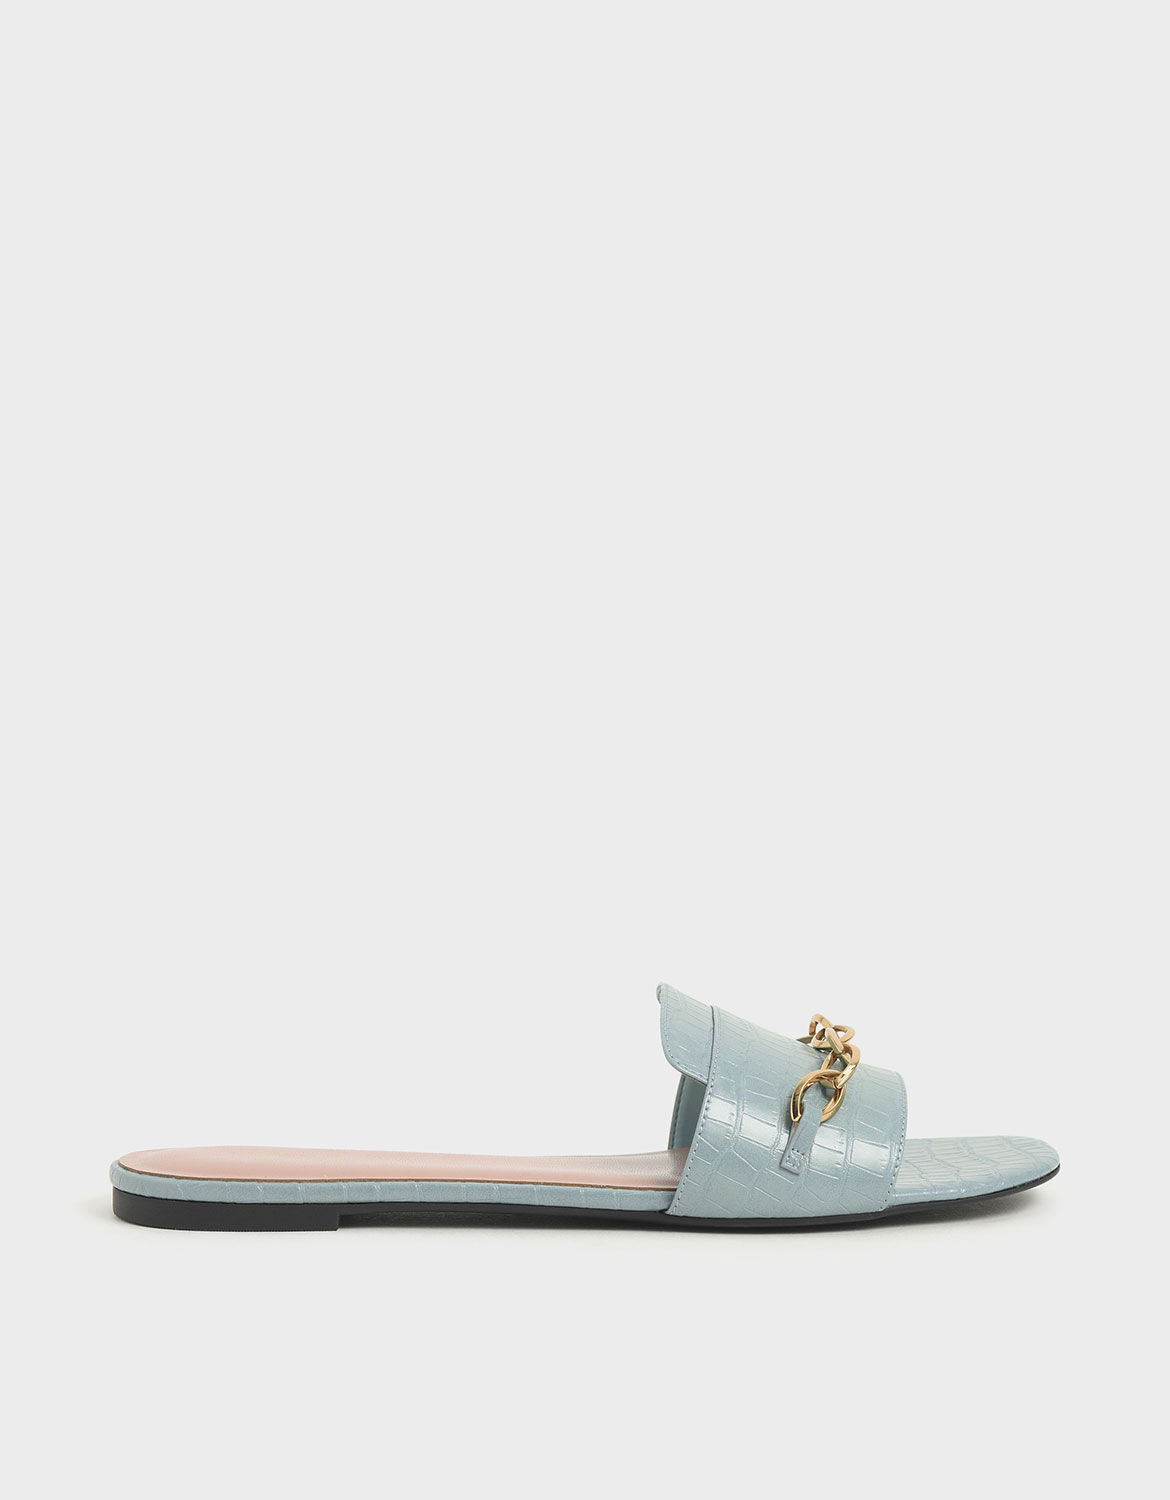 blue croc sandals